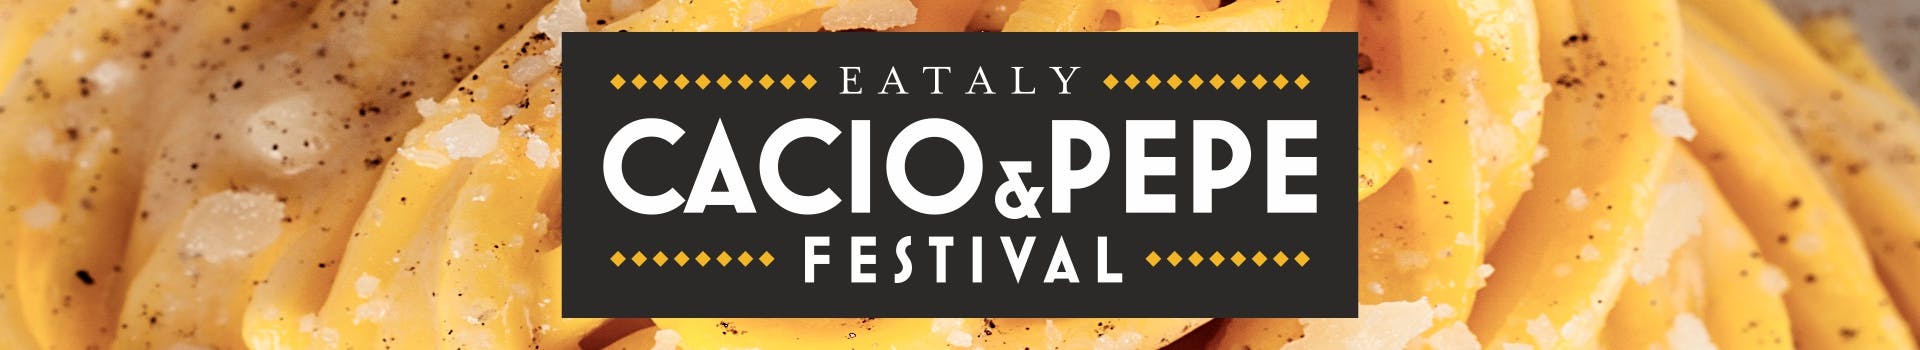 Cacio & Pepe festival - Eataly